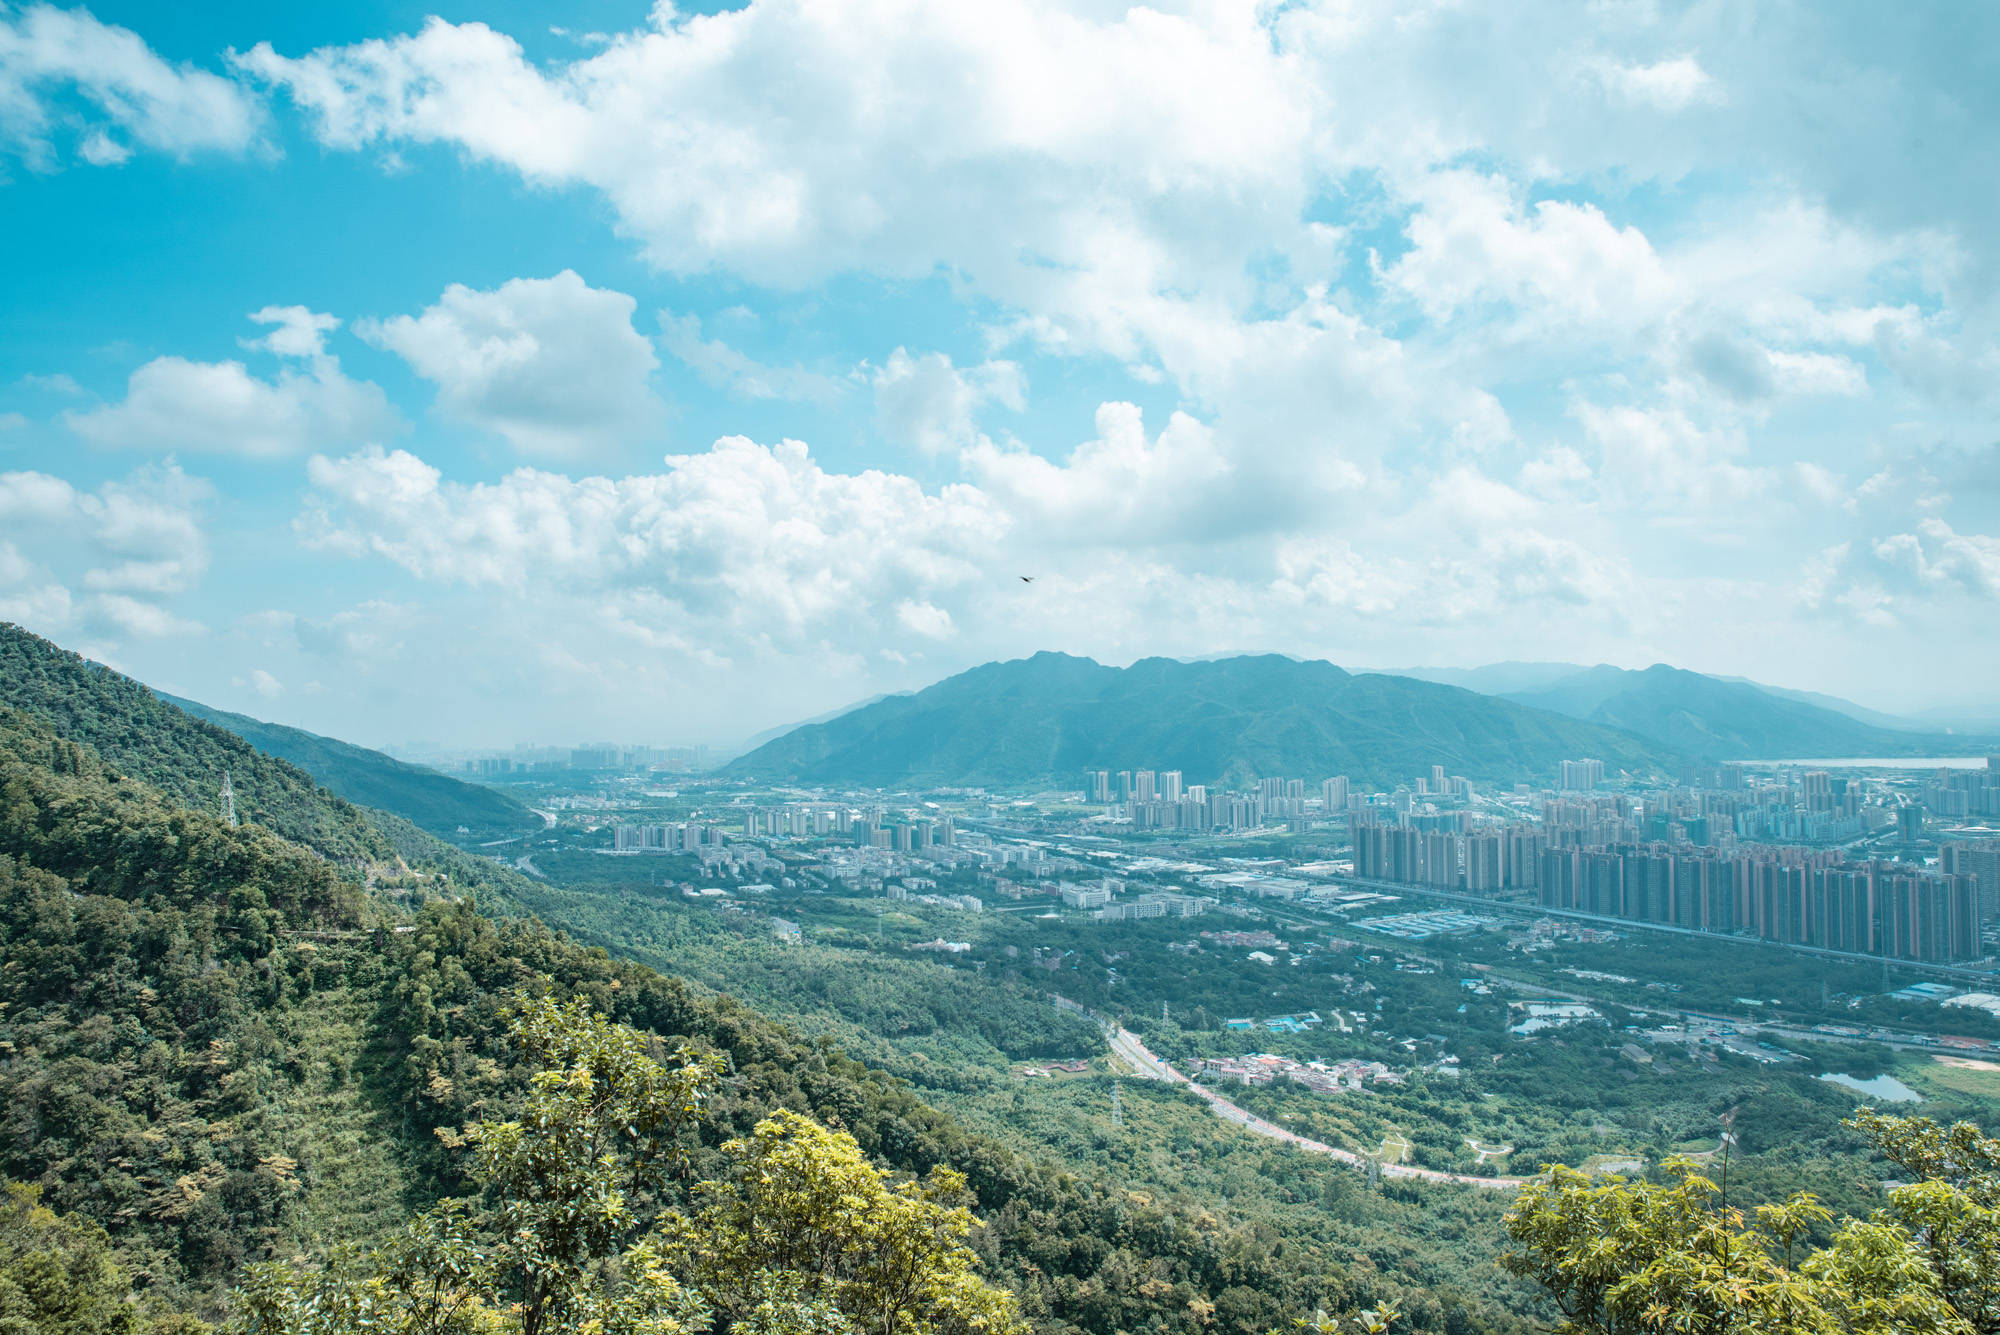 肇庆最高的山峰,可俯噉肇庆全景,而且还是肇庆观日出的最佳地点